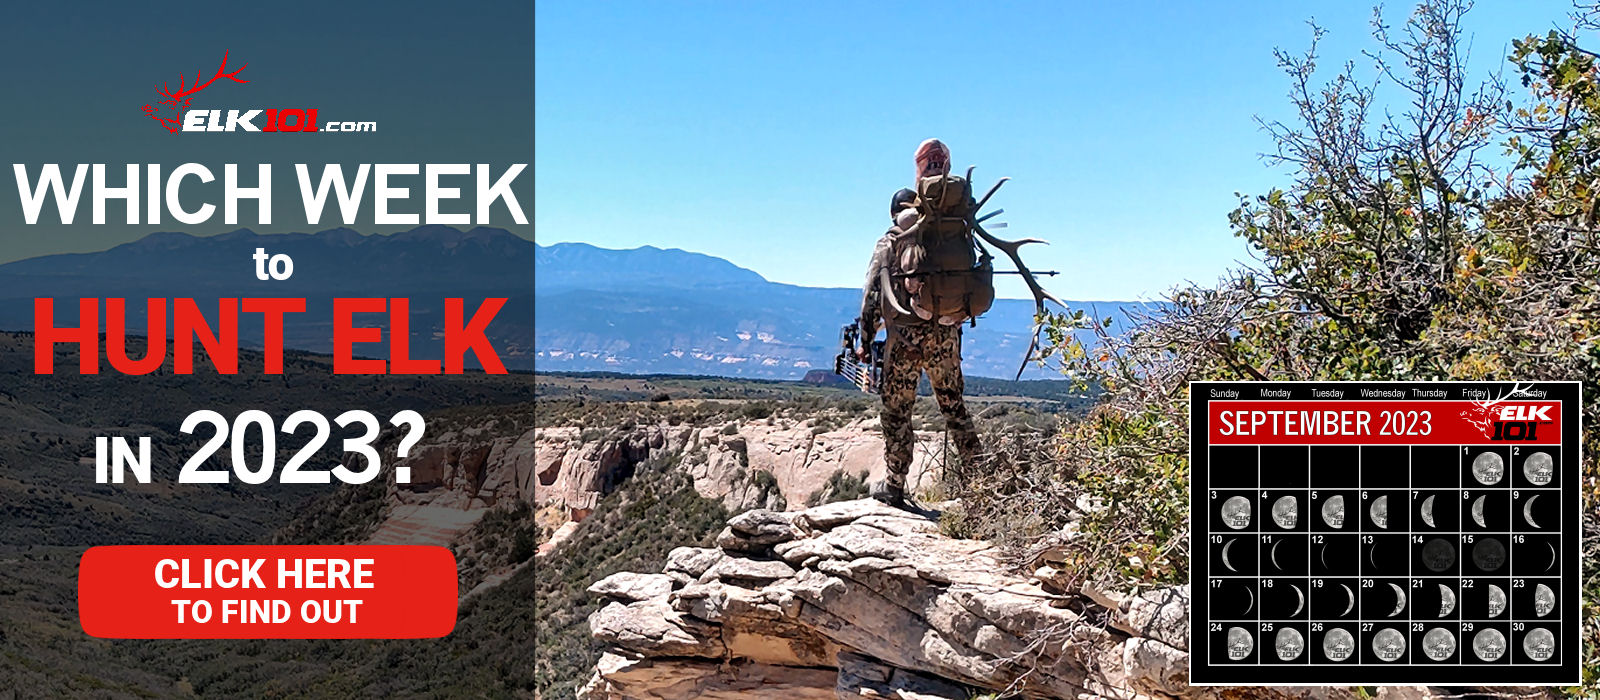 2023_0109_Which Week to Hunt Elk 2023_website_1600x700